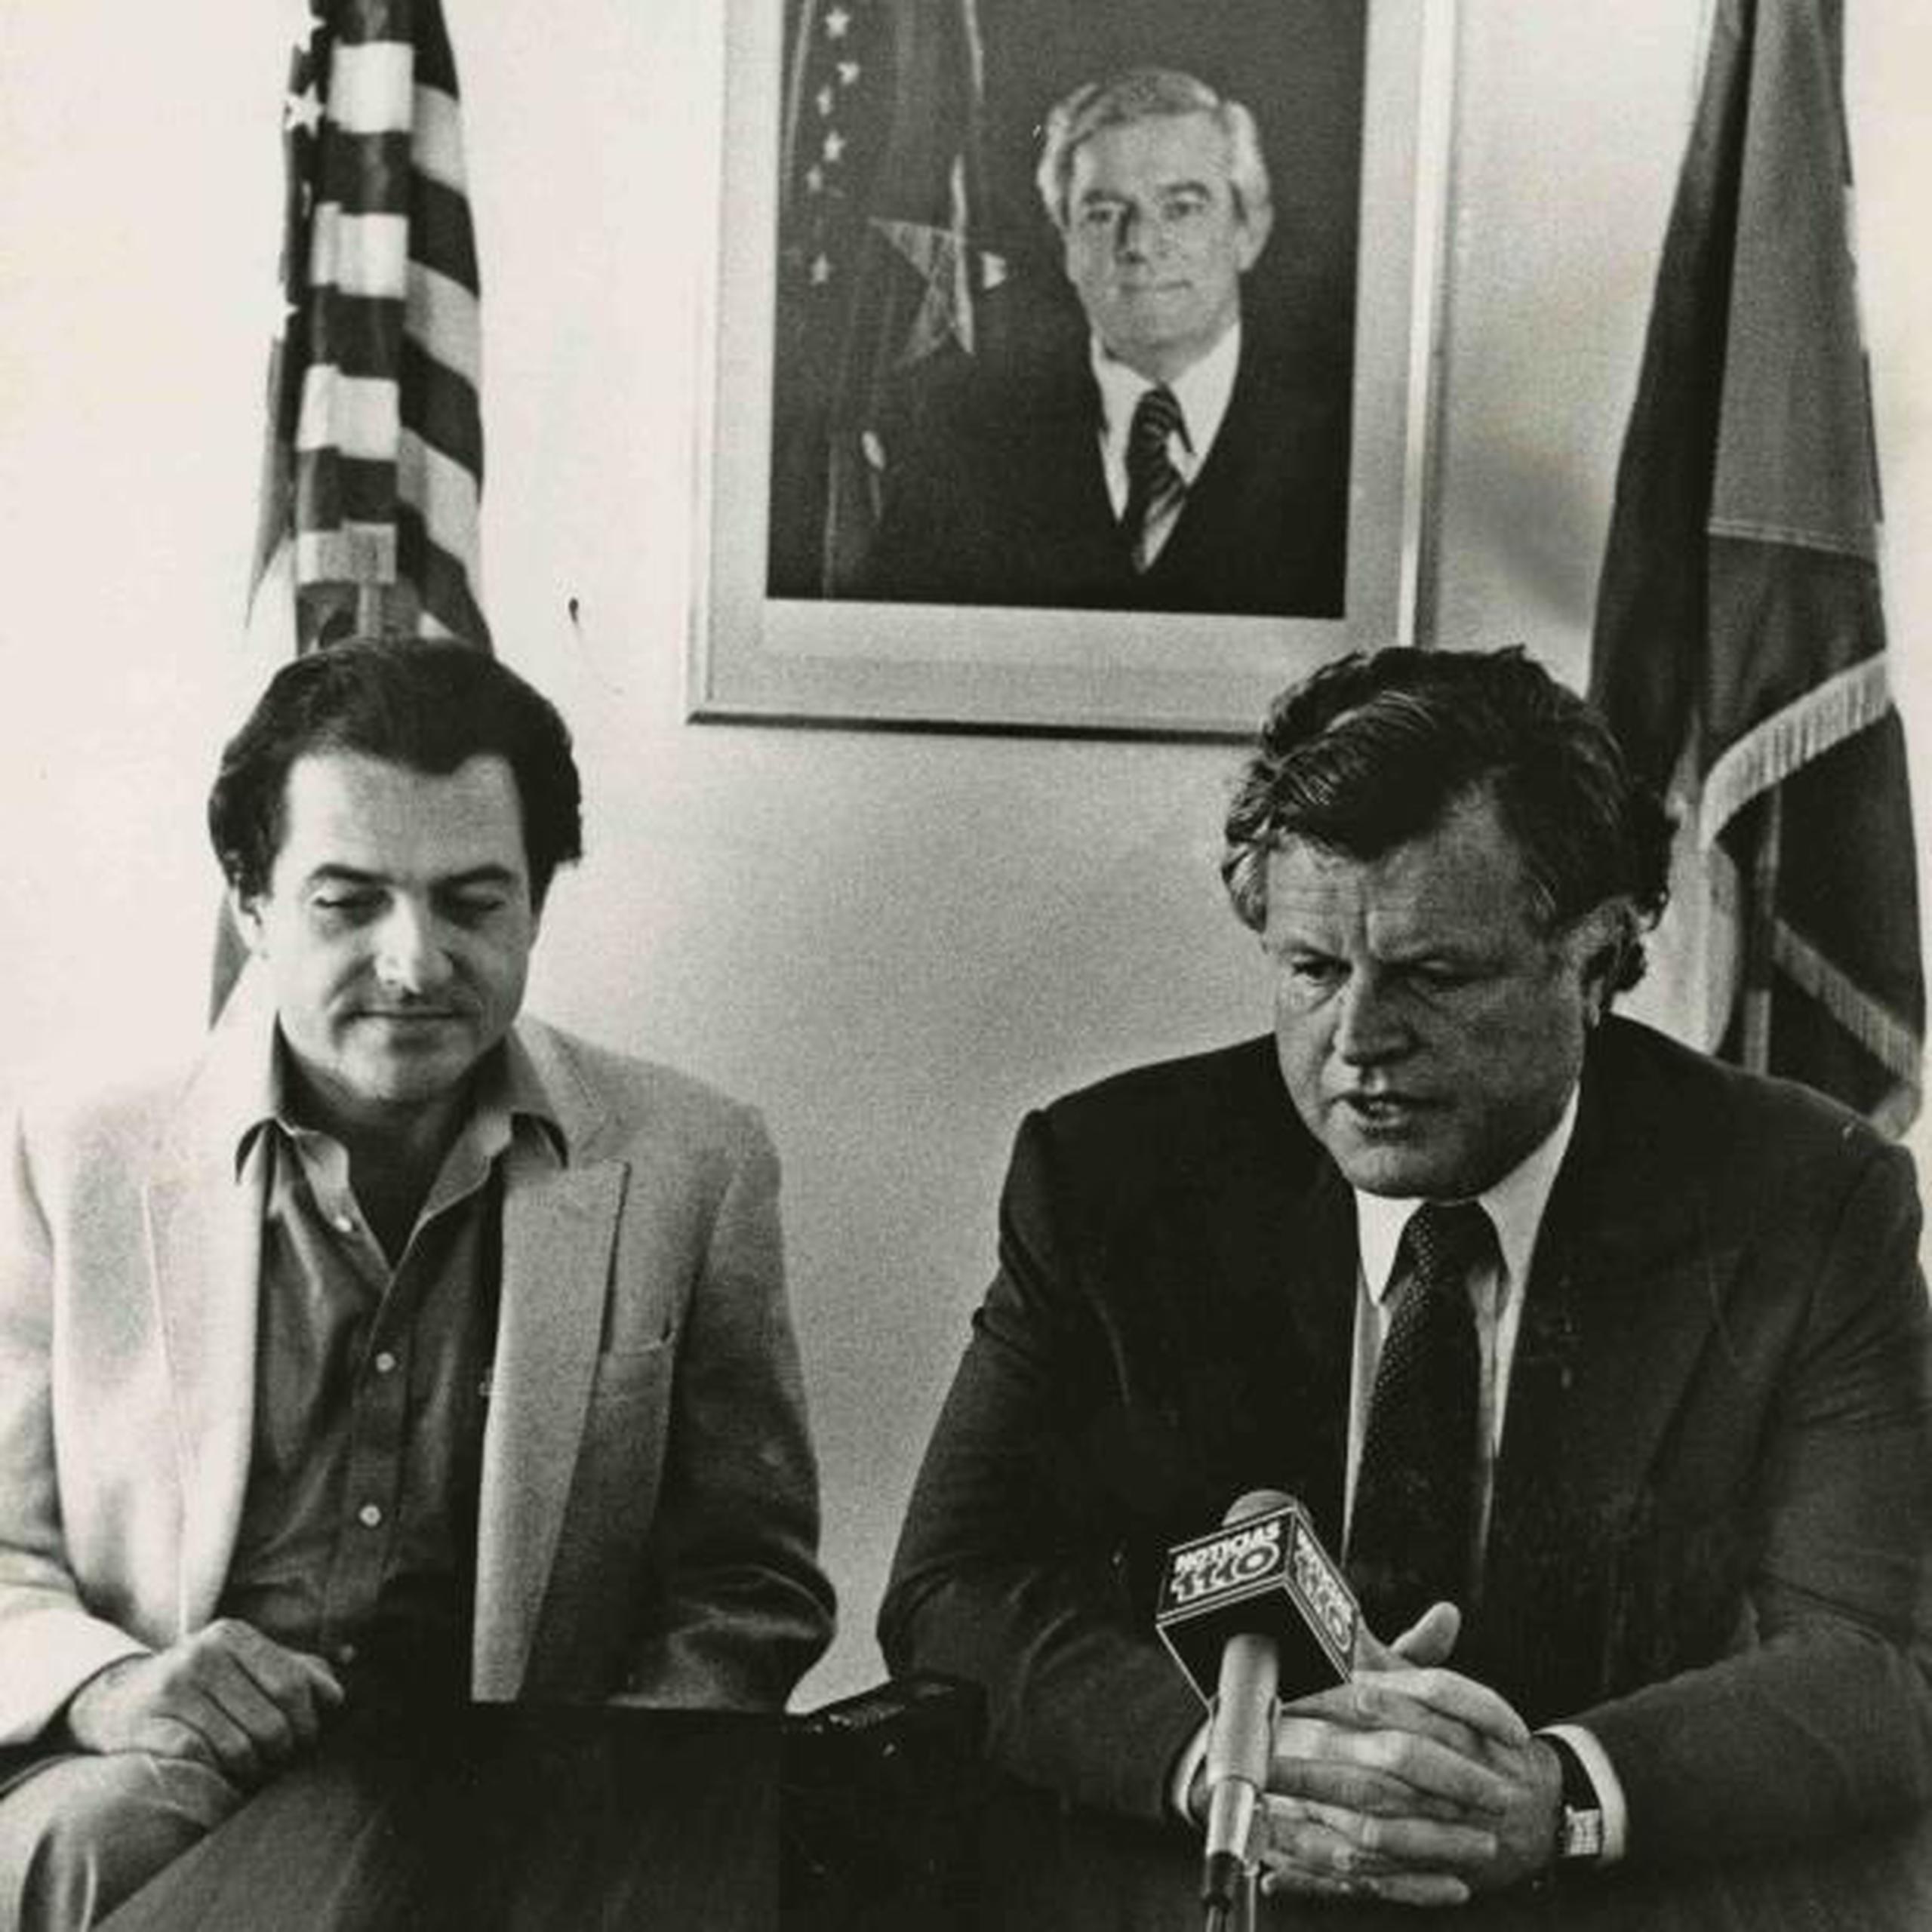 En casa siguió siendo Cuchin, sin acento. En la imagen junto a Edward Kennedy en el 1982. (Archivo)